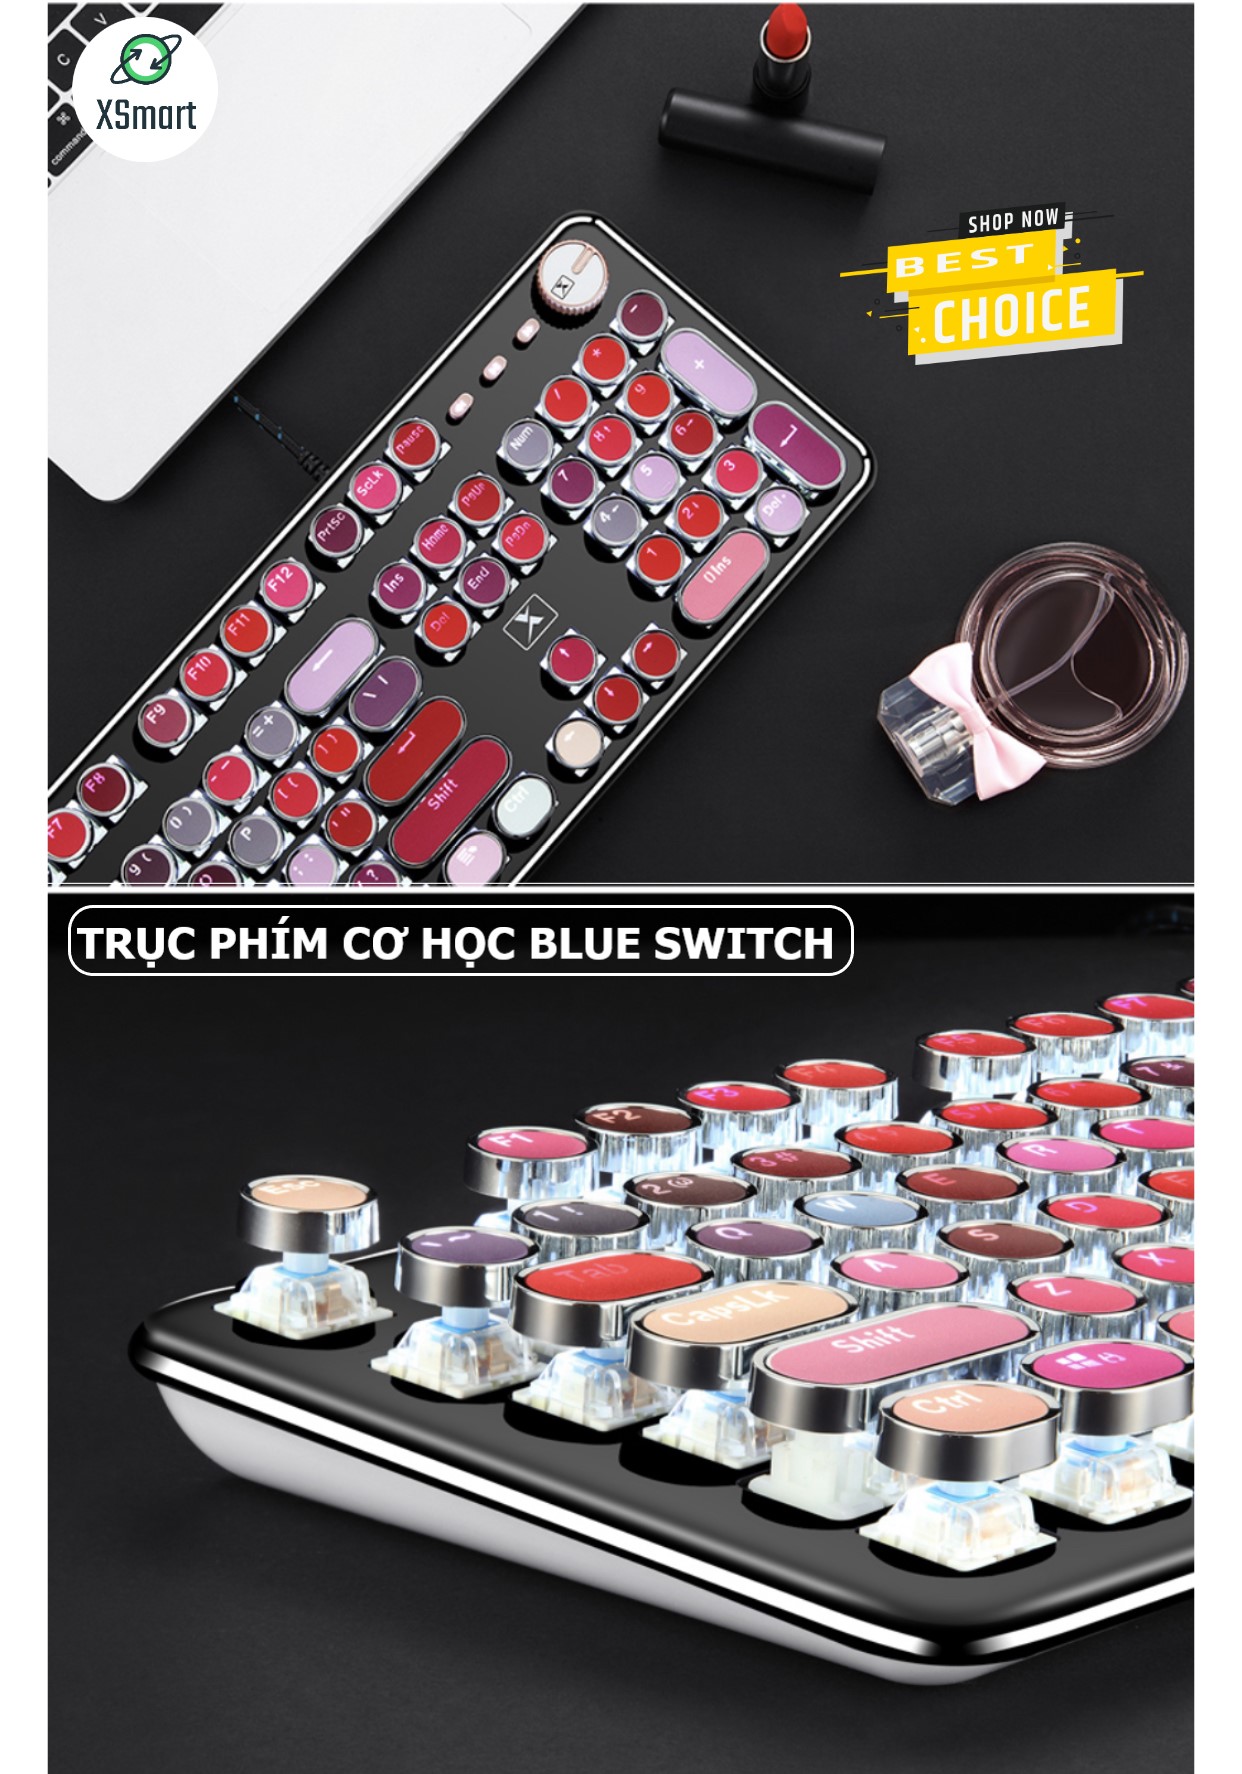 Bàn Phím CƠ Máy Tính XSmart Lipstick K520 PRO LED Đổi Màu, Bản Đặc Biệt Siêu Đẹp, Trục cơ blue switch cho pc, laptop - Hàng Chính Hãng